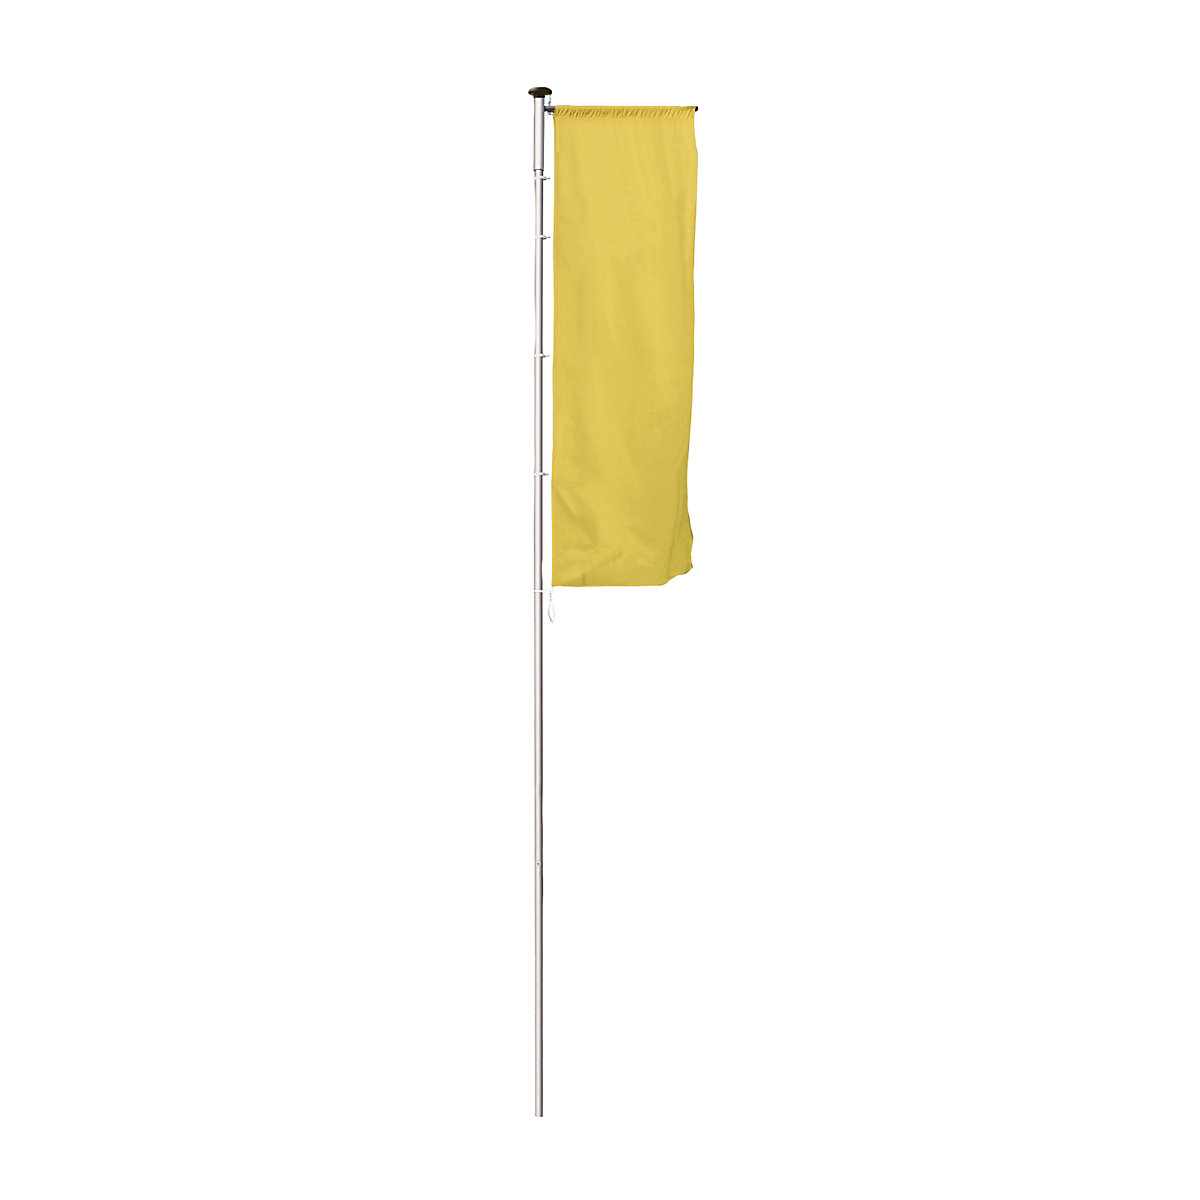 Mannus – Catarg din aluminiu pentru steaguri, PIRAT, cu braț, înălțime de la podea 8 m, Ø 100 mm